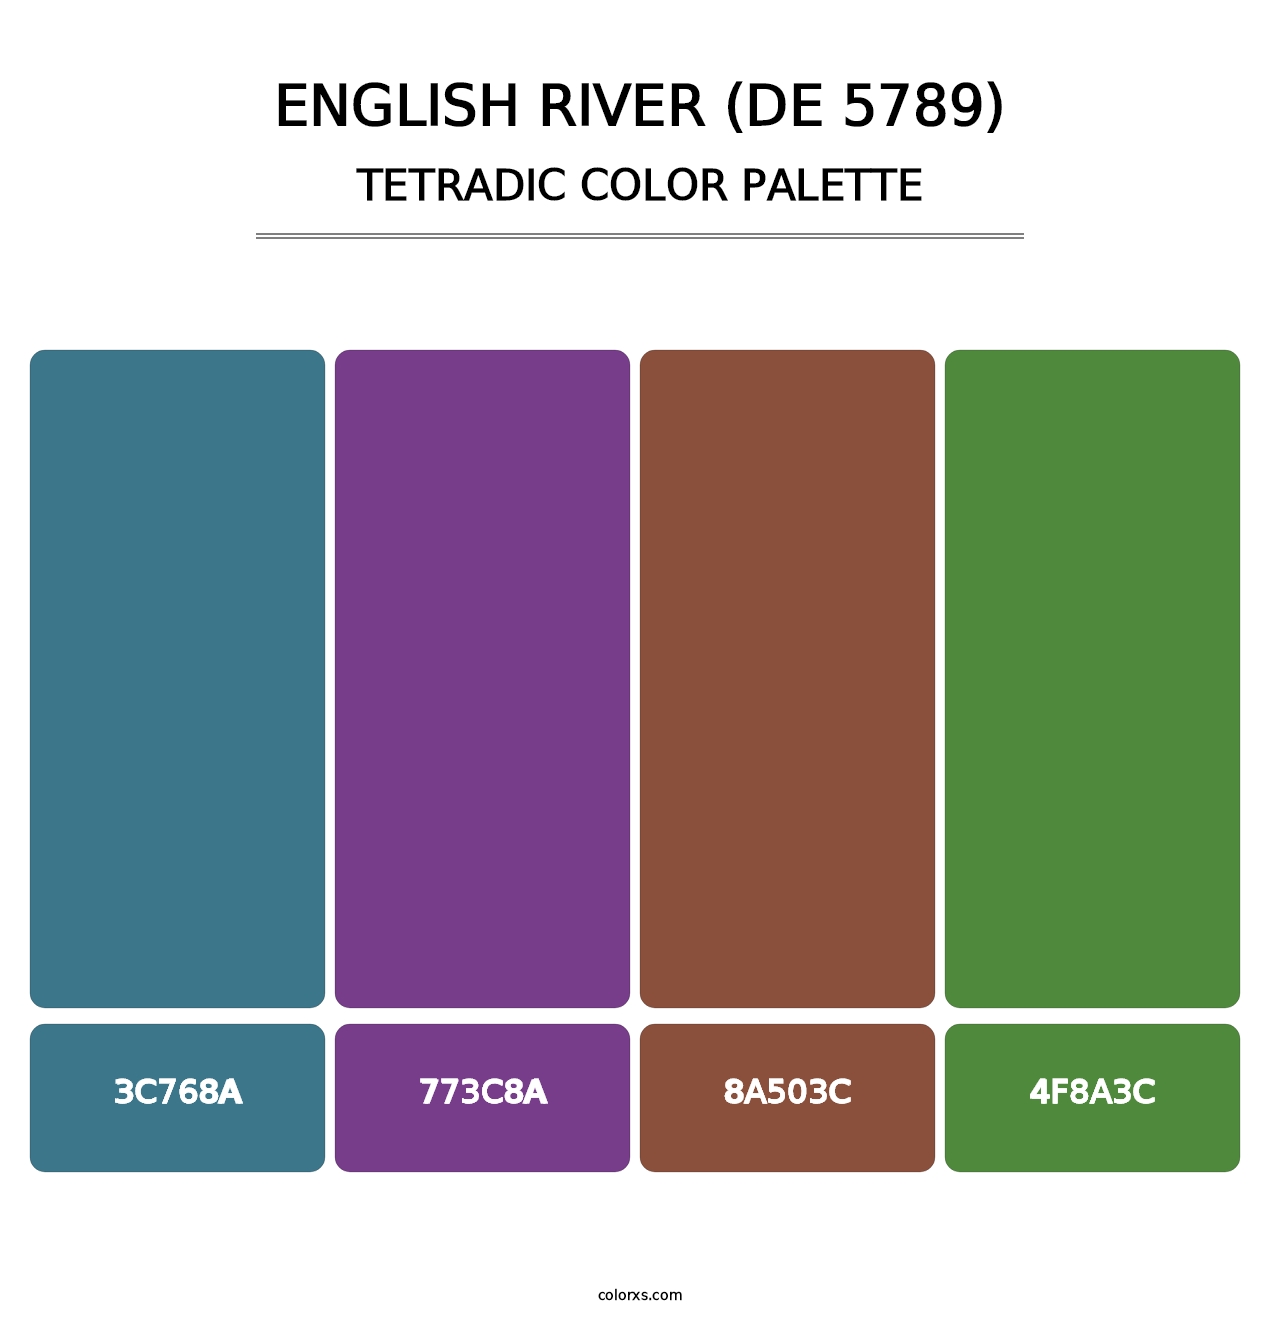 English River (DE 5789) - Tetradic Color Palette